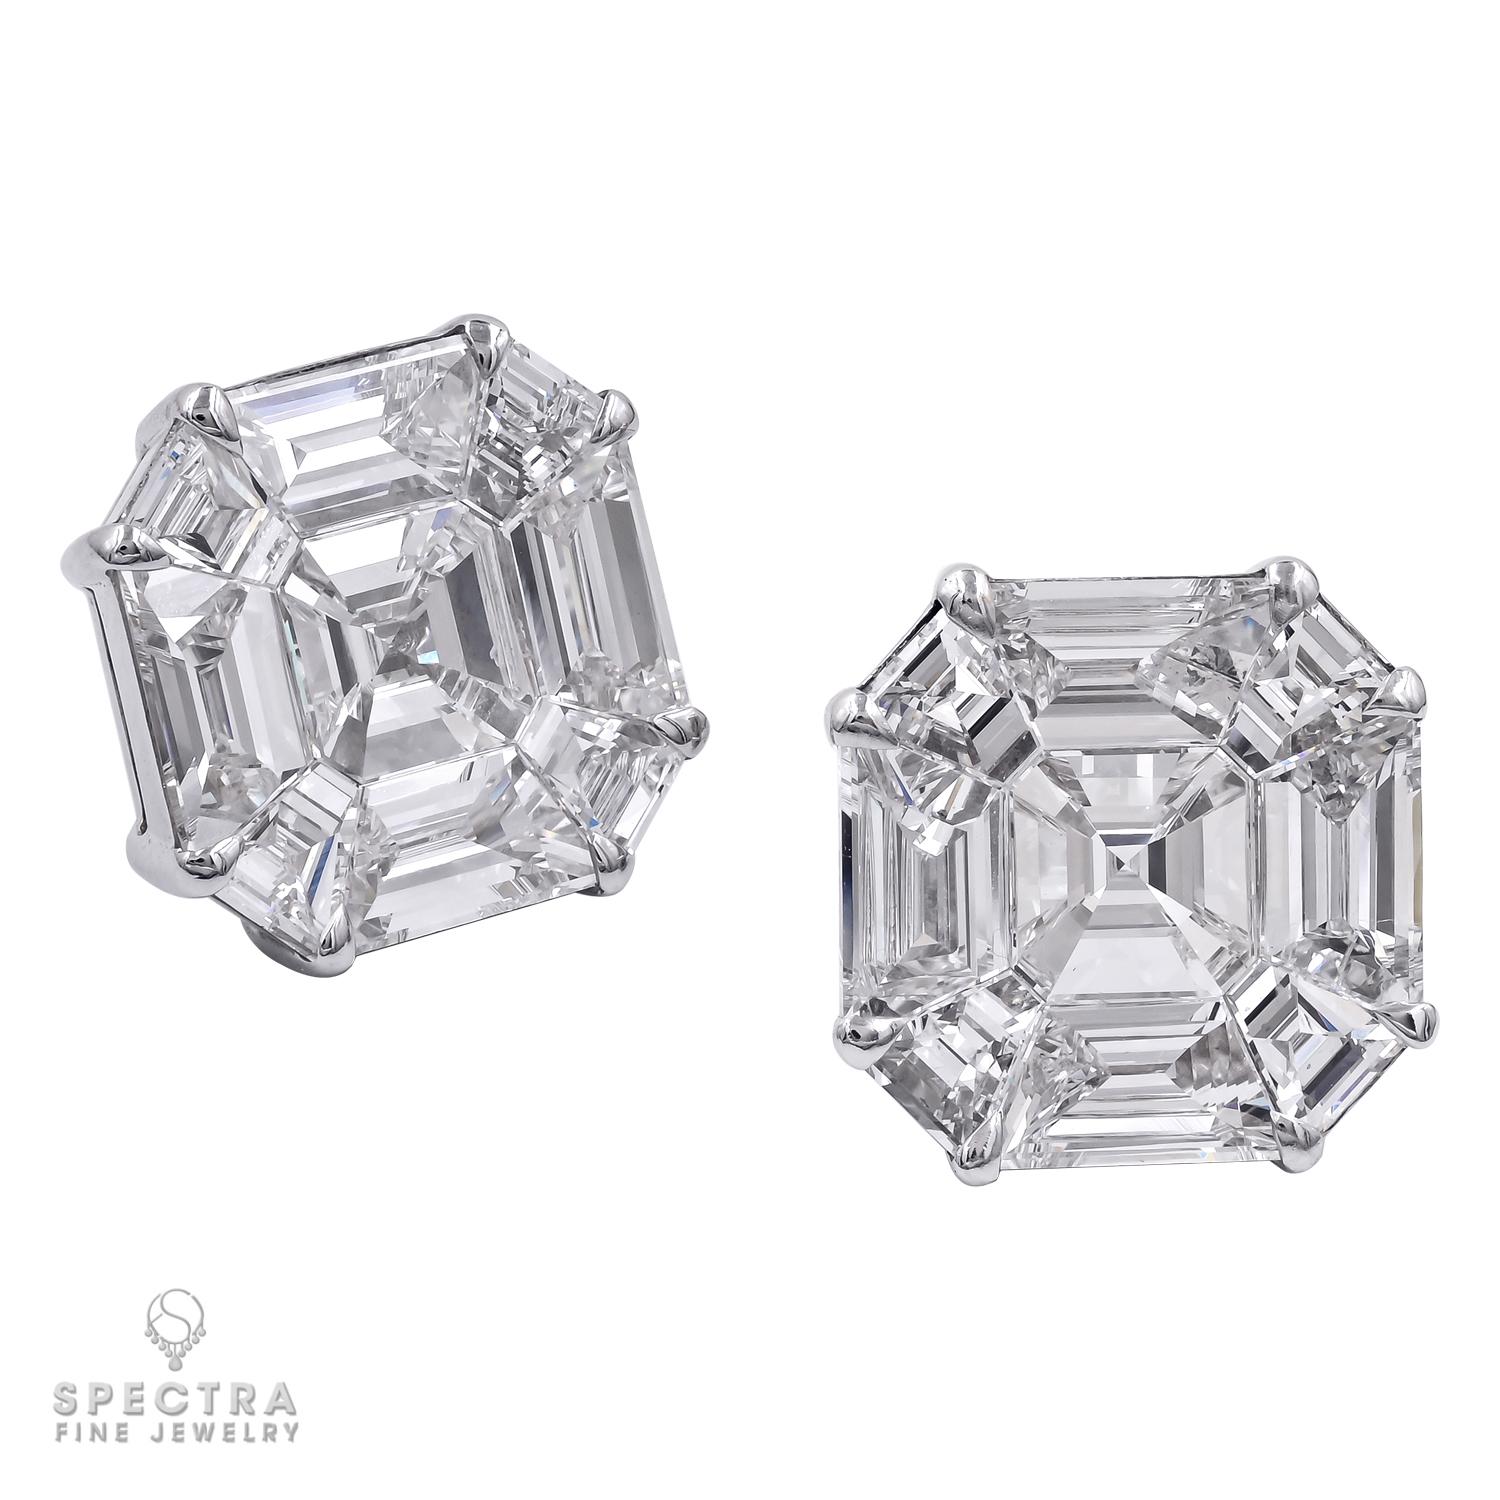 Ces boucles d'oreilles en diamant Illusion Fine Jewelry, fabriquées au 21e siècle, suggèrent quelque chose de beaucoup plus grand. Réalisée en or blanc 18 carats, la paire de boucles d'oreilles a un poids de diamants estimé à 10,74. Cette paire